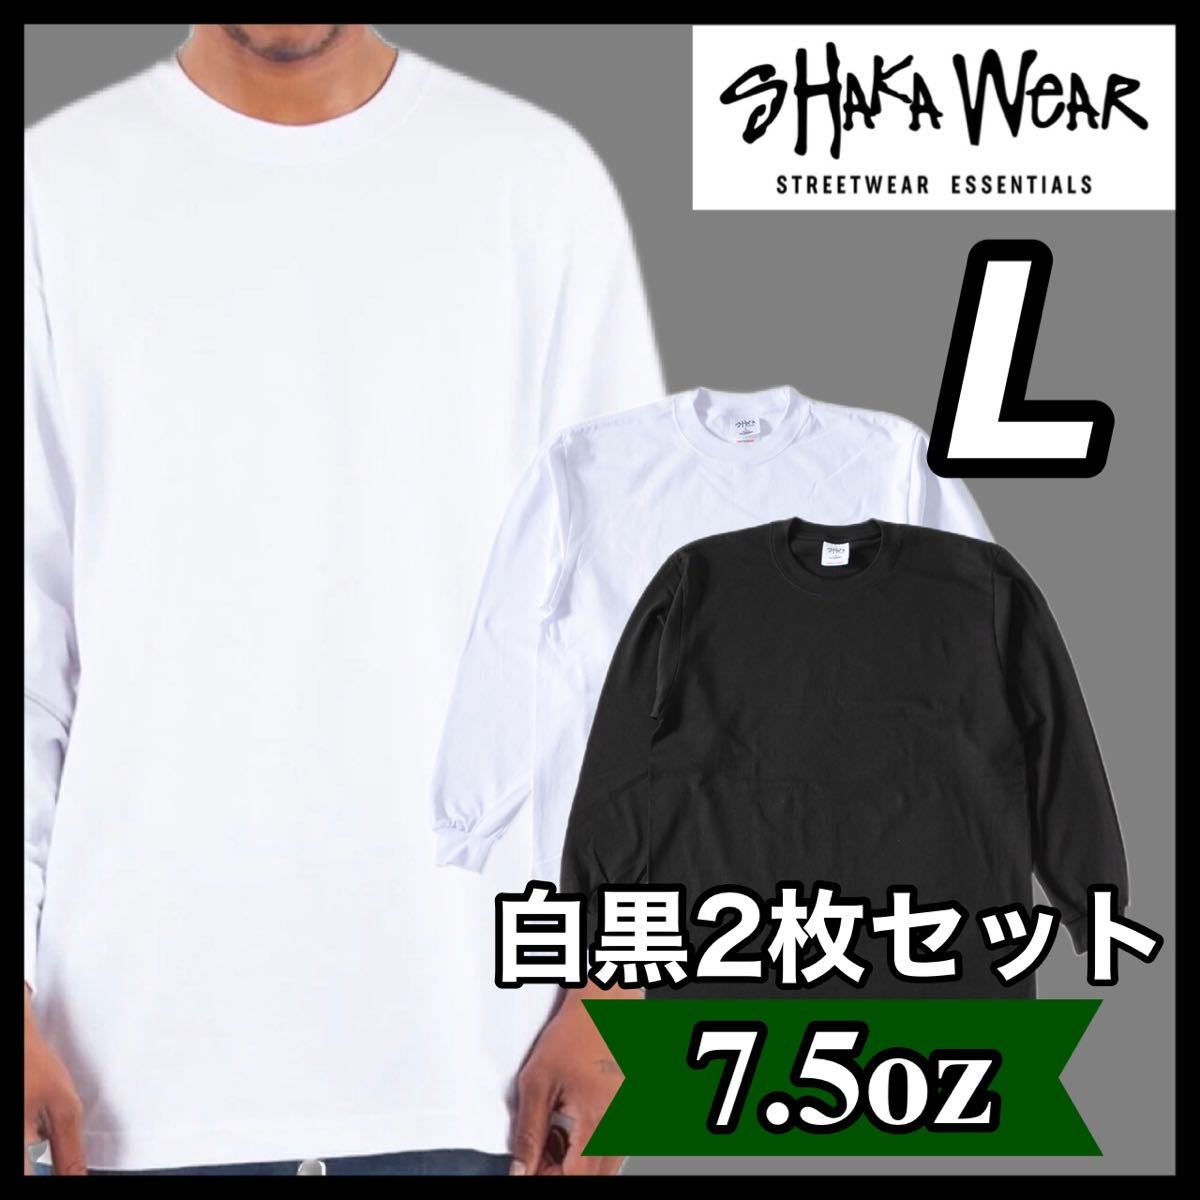 新品 シャカウェア 7.5oz ヘビーウエイト 無地 長袖Tシャツ 白黒 2枚セット L_画像1